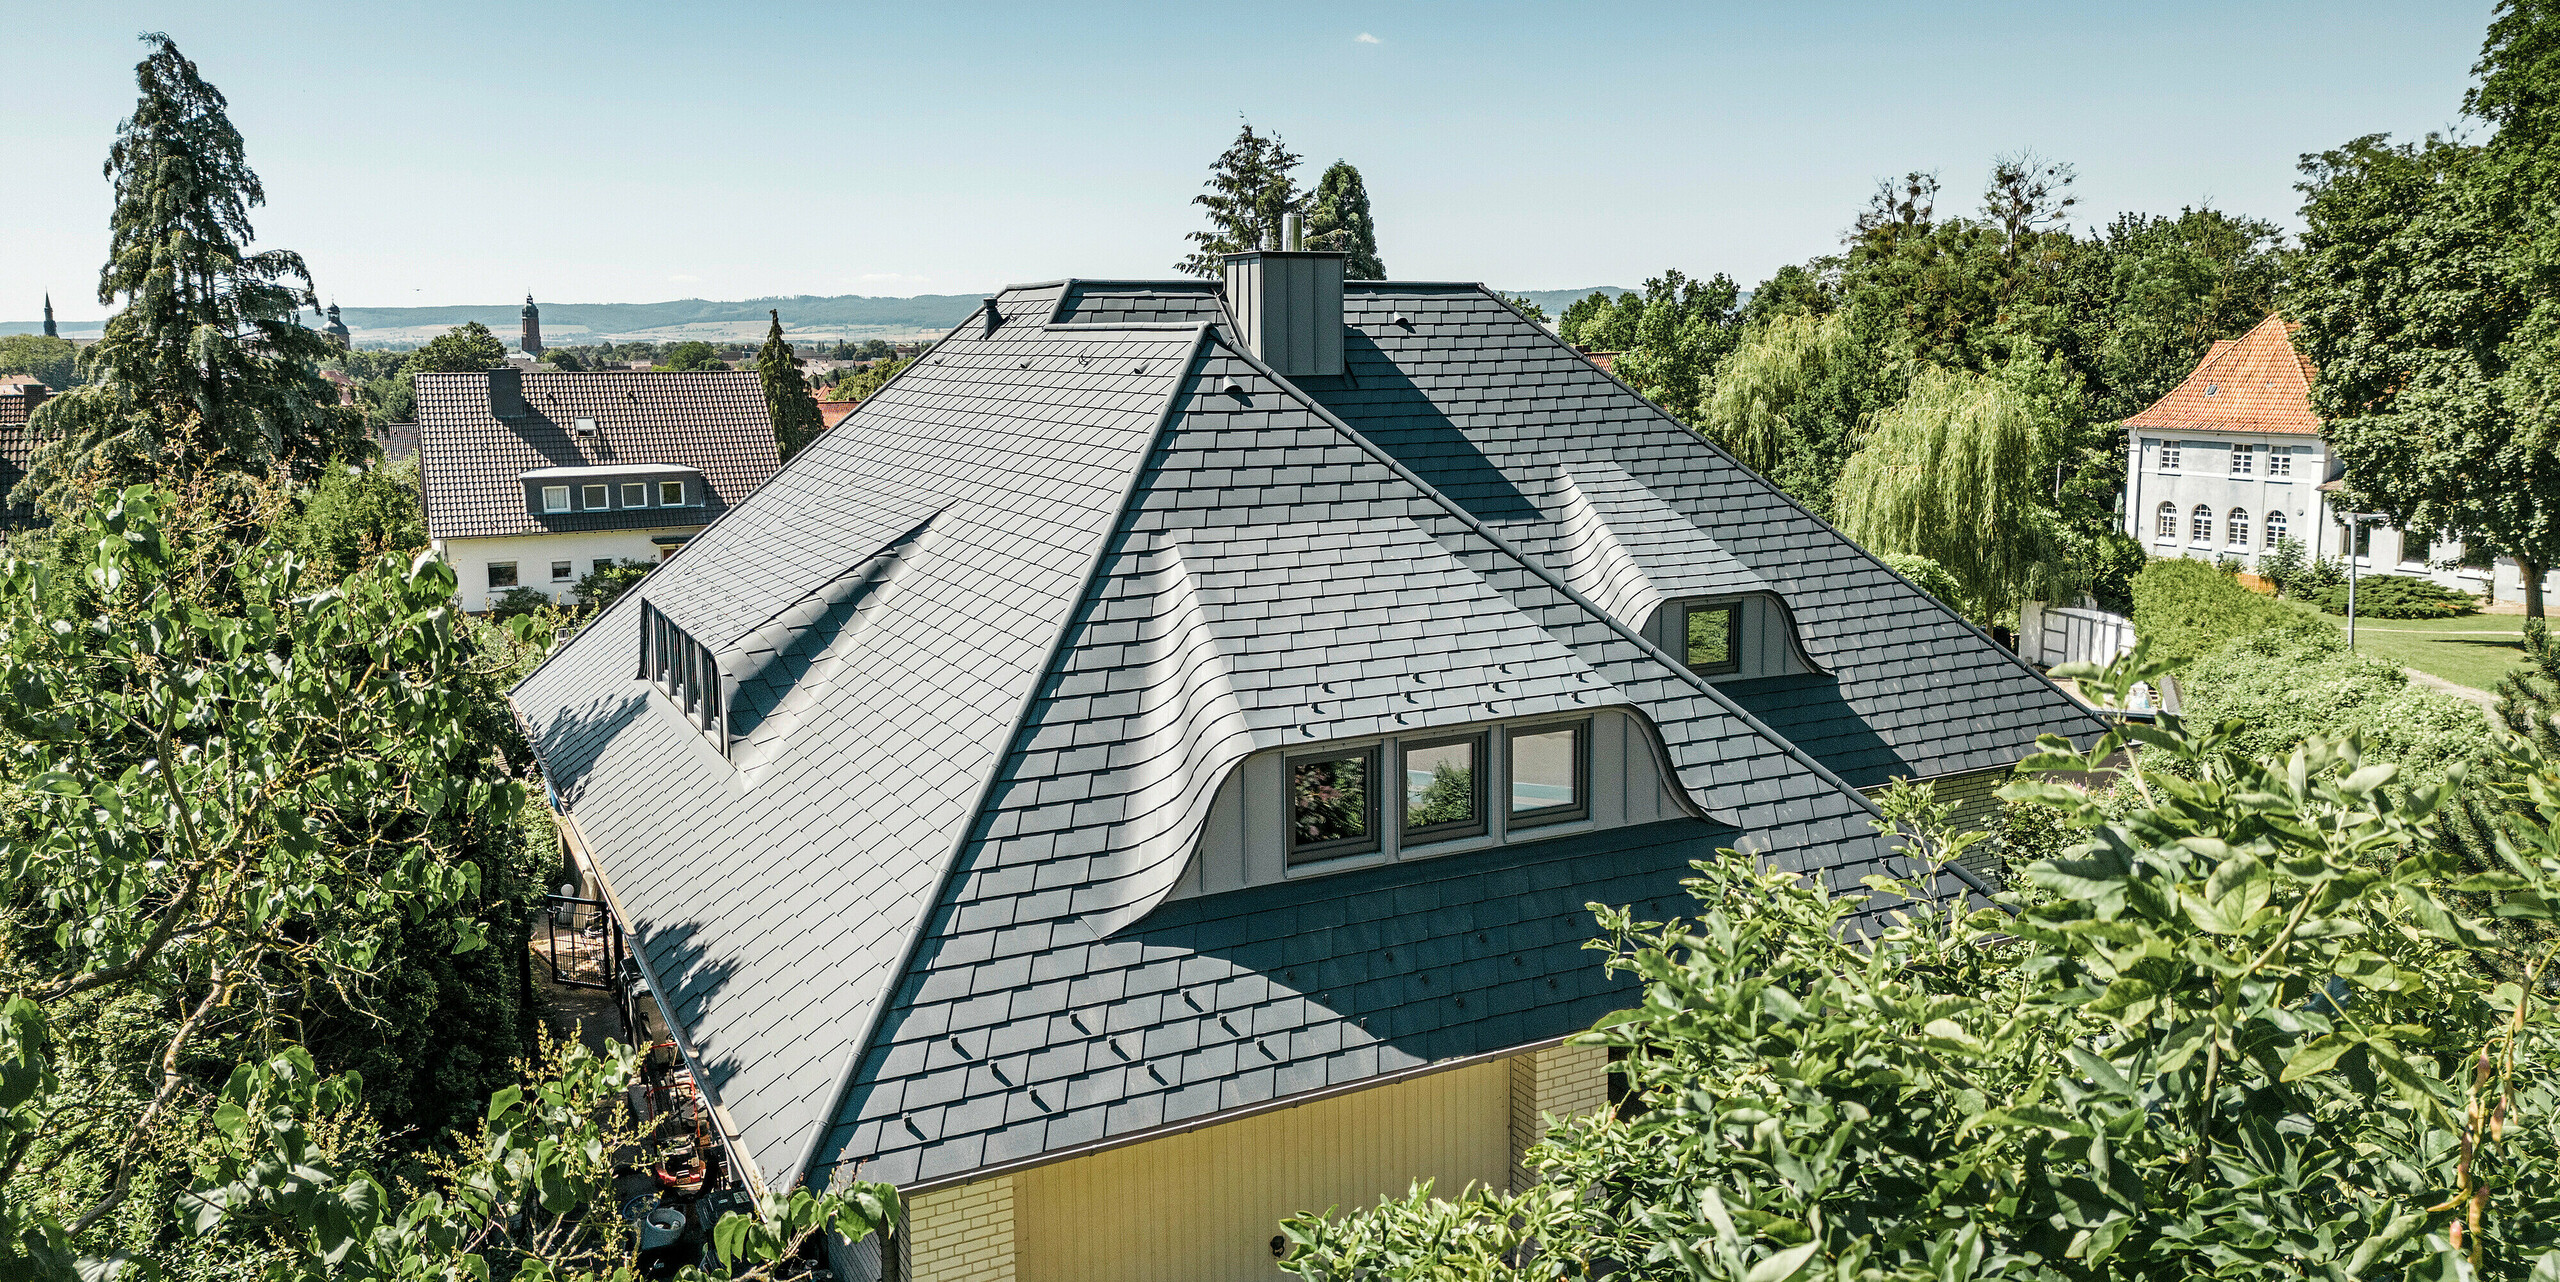 Blick auf das Dach eines traditionellen Einfamilienhauses in Einbeck, Deutschland. Die einzigartige Dachlandschaft wurde mit robusten PREFA Dachschindeln in P.10 Anthrazit eingedeckt. Das Dach zeichnet sich durch seine anmutigen Hechtgauben und die präzise Verarbeitung der Schindeln aus, die sich harmonisch in die ländliche Umgebung und das grüne Landschaftsbild einfügen. Die Kombination aus zeitgenössischem Dachmaterial und klassischer Architektur verbindet Tradition mit Innovation und Nachhaltigkeit.